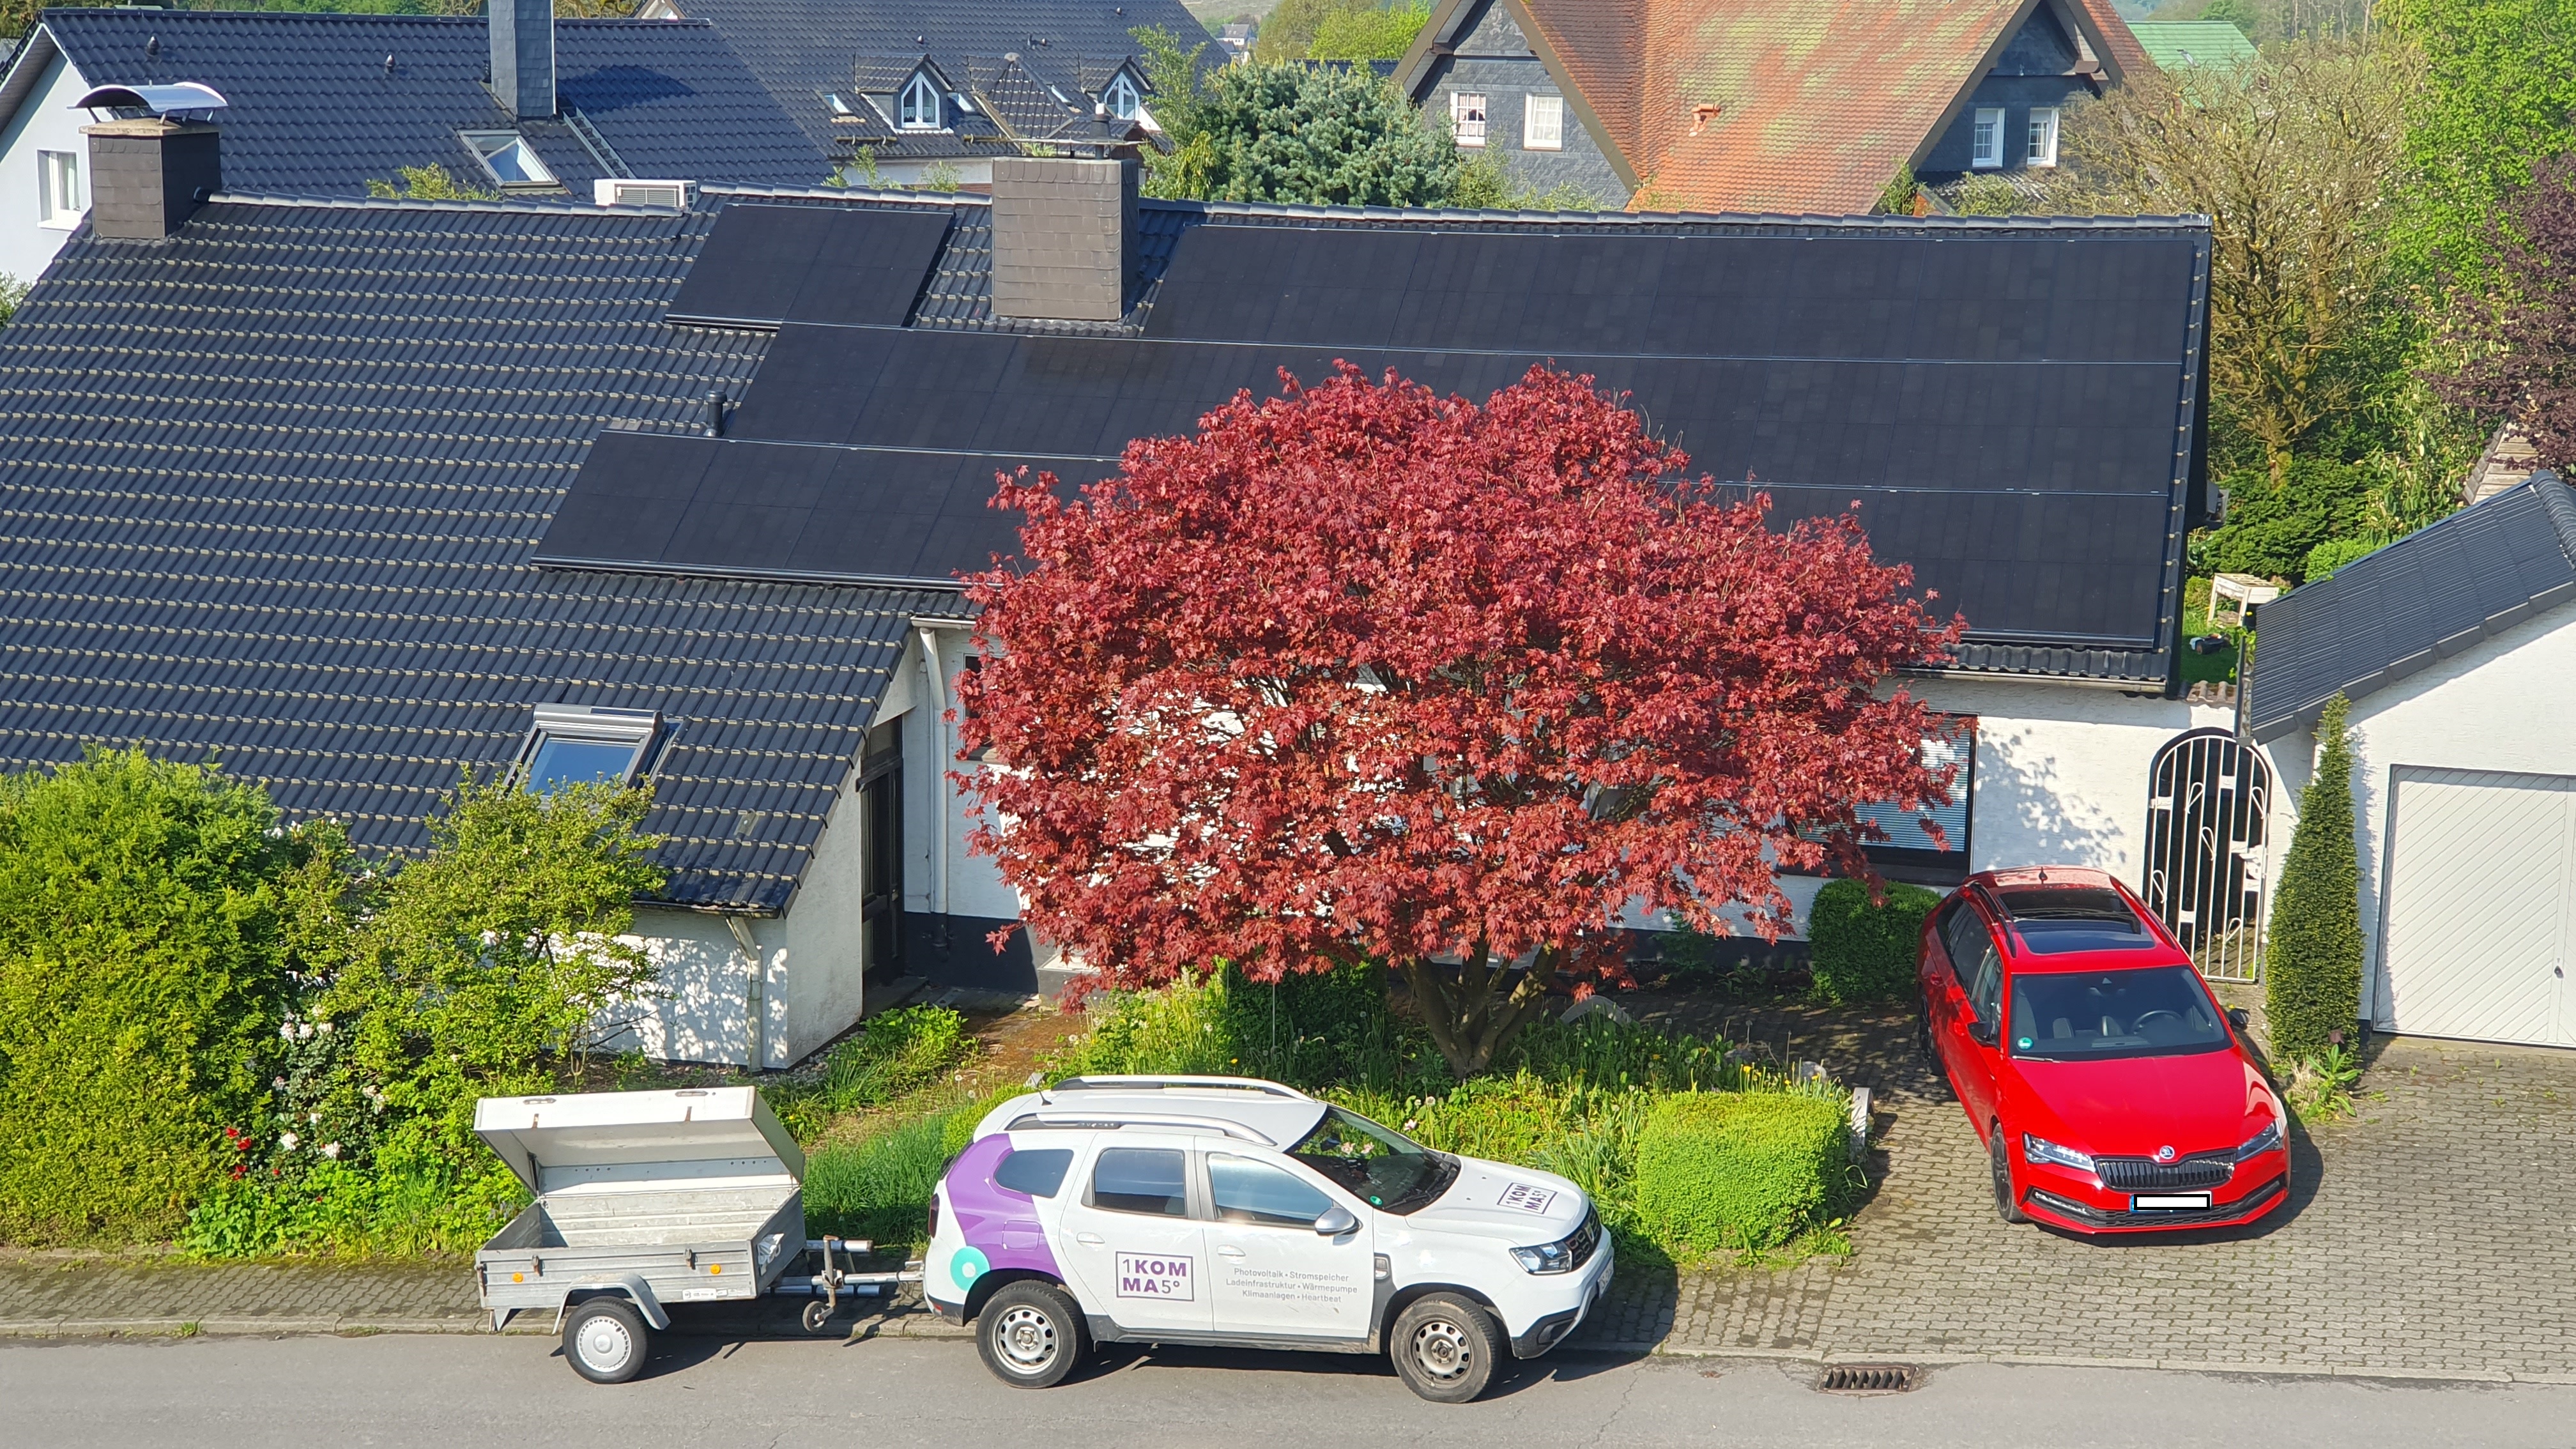 Bild der 1KOMMA5° Kierspe: Meisterbetrieb für Photovoltaik, Solaranlagen & Wärmepumpen